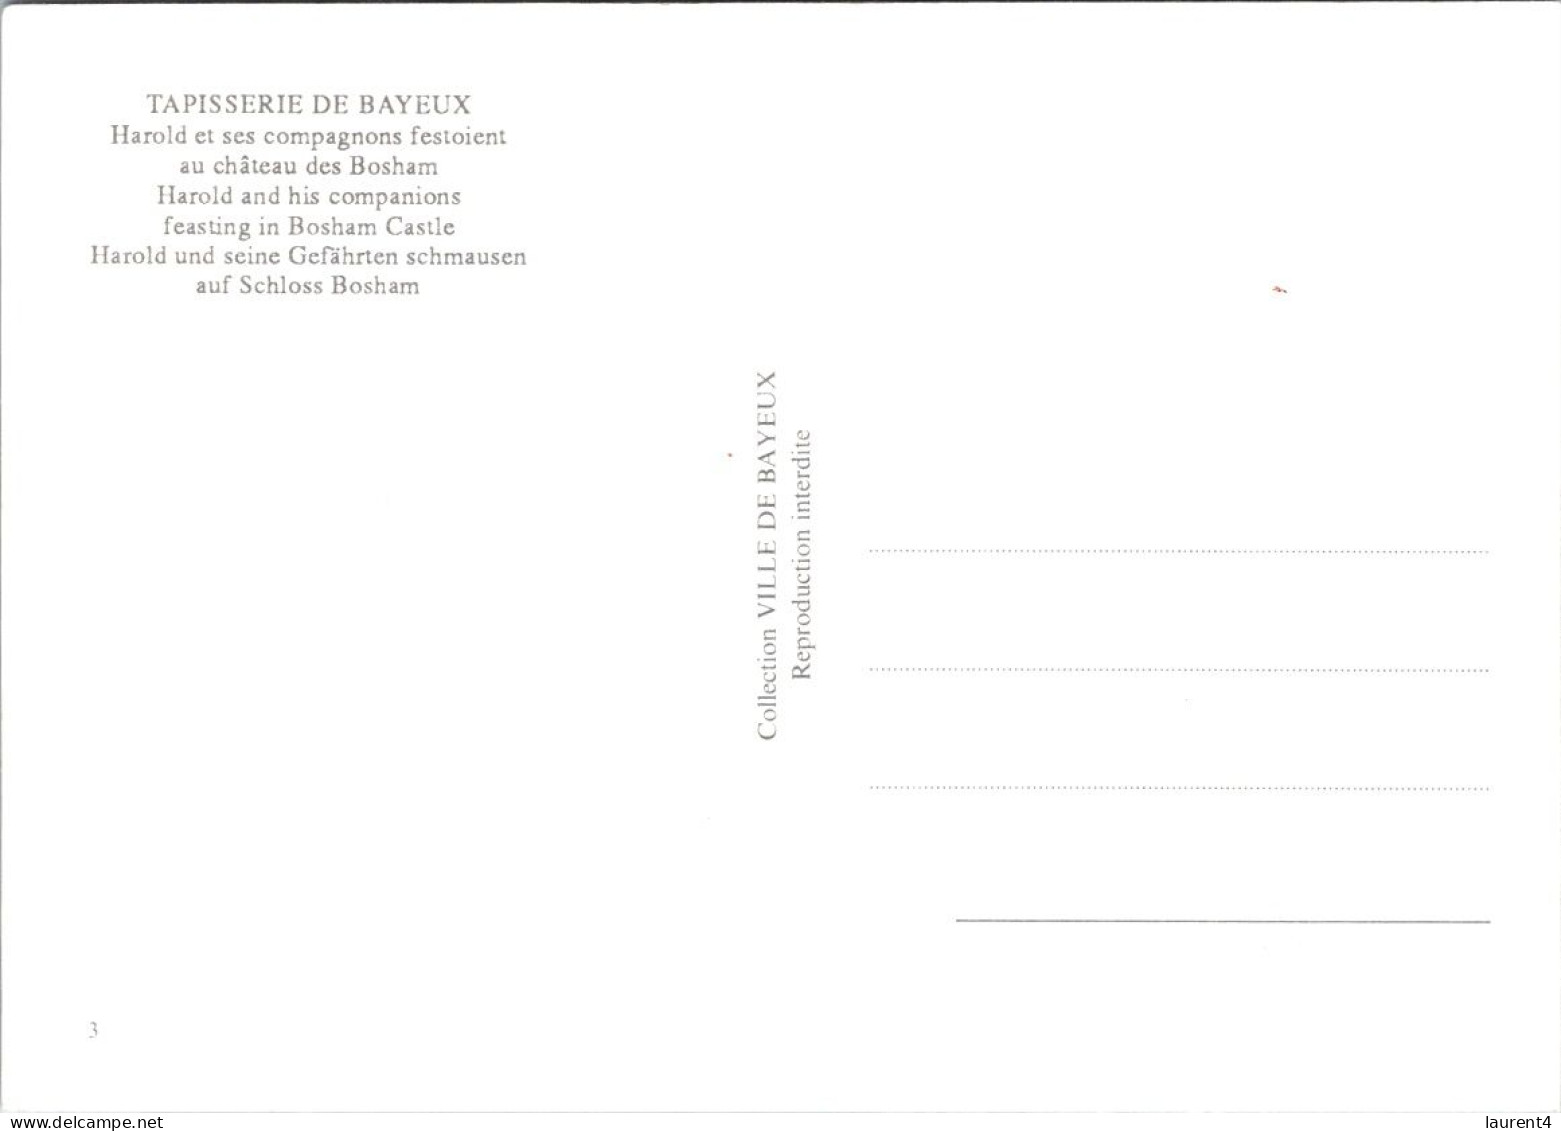 12-4-2024 (1 Z 43) France - Tapisserie De Bayeux (2 Postcards) - Kunstgegenstände